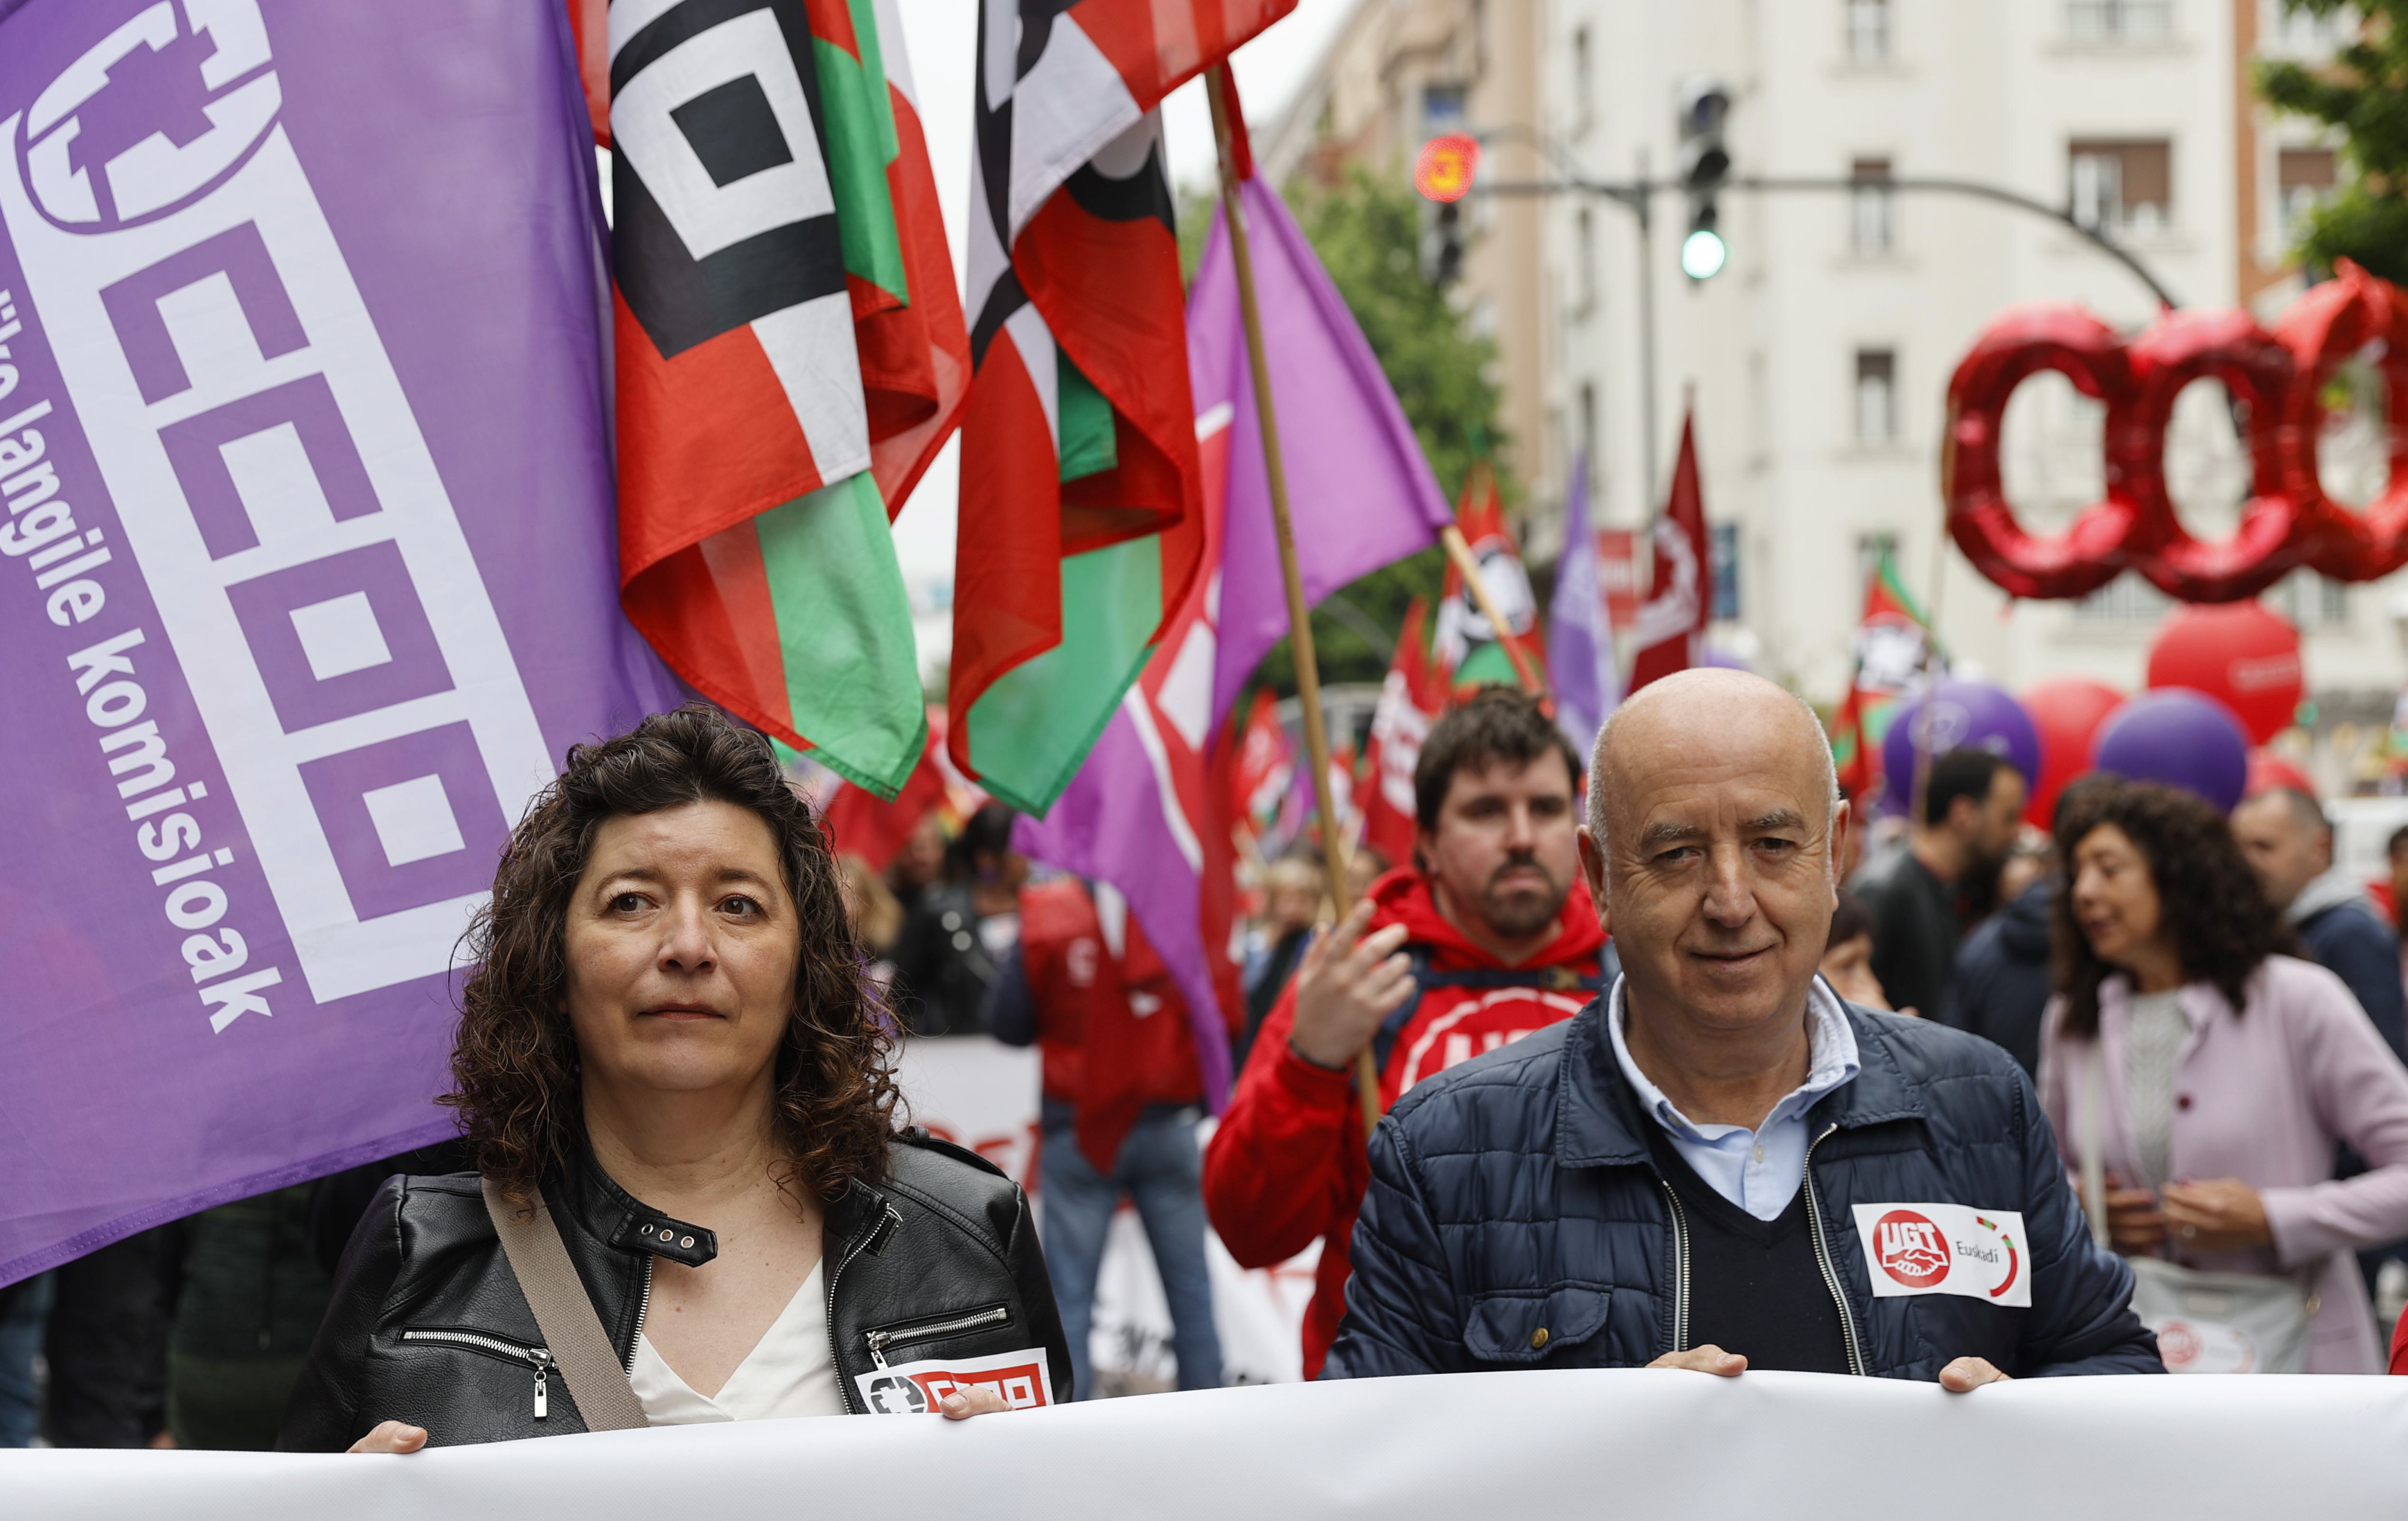 La secretaria general de CCOO, Loli García, junto a su homólogo en UGT, Raúl Arza, durante la manifestación de 1 de Mayo en Bilbao / Luis Tejido (EFE)